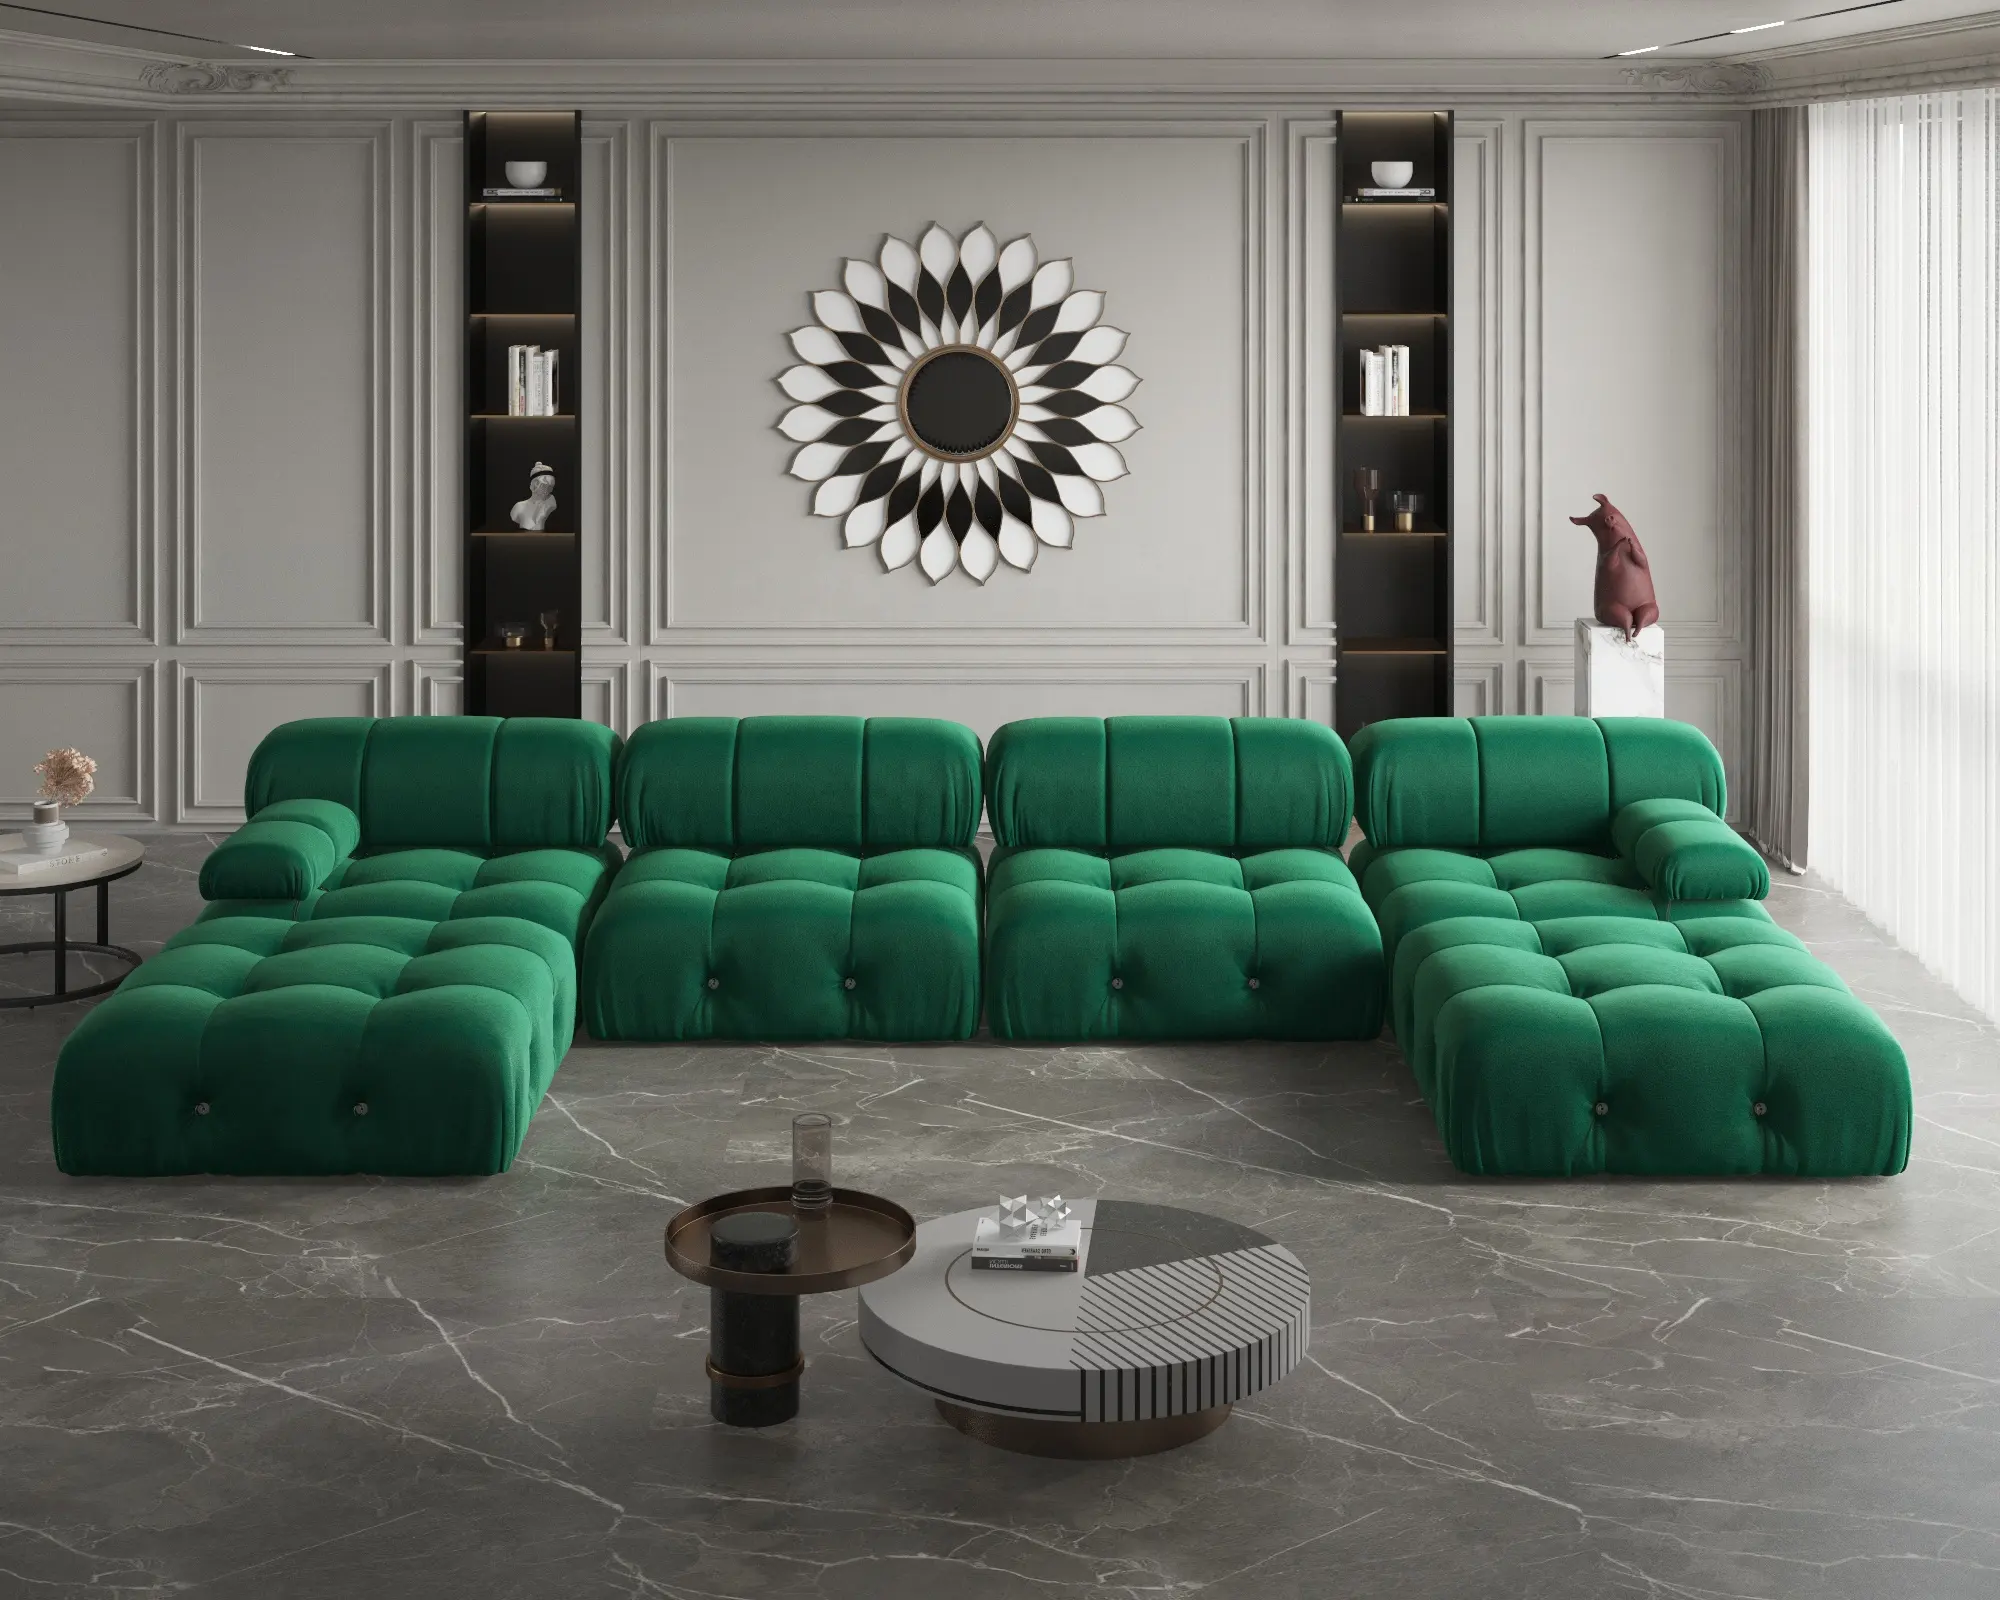 ATUNUS Beliebte Design-Ecke Modulares Schnitts ofa Künstlerische High Fashion Samts toff U-förmige Couch für Hotel